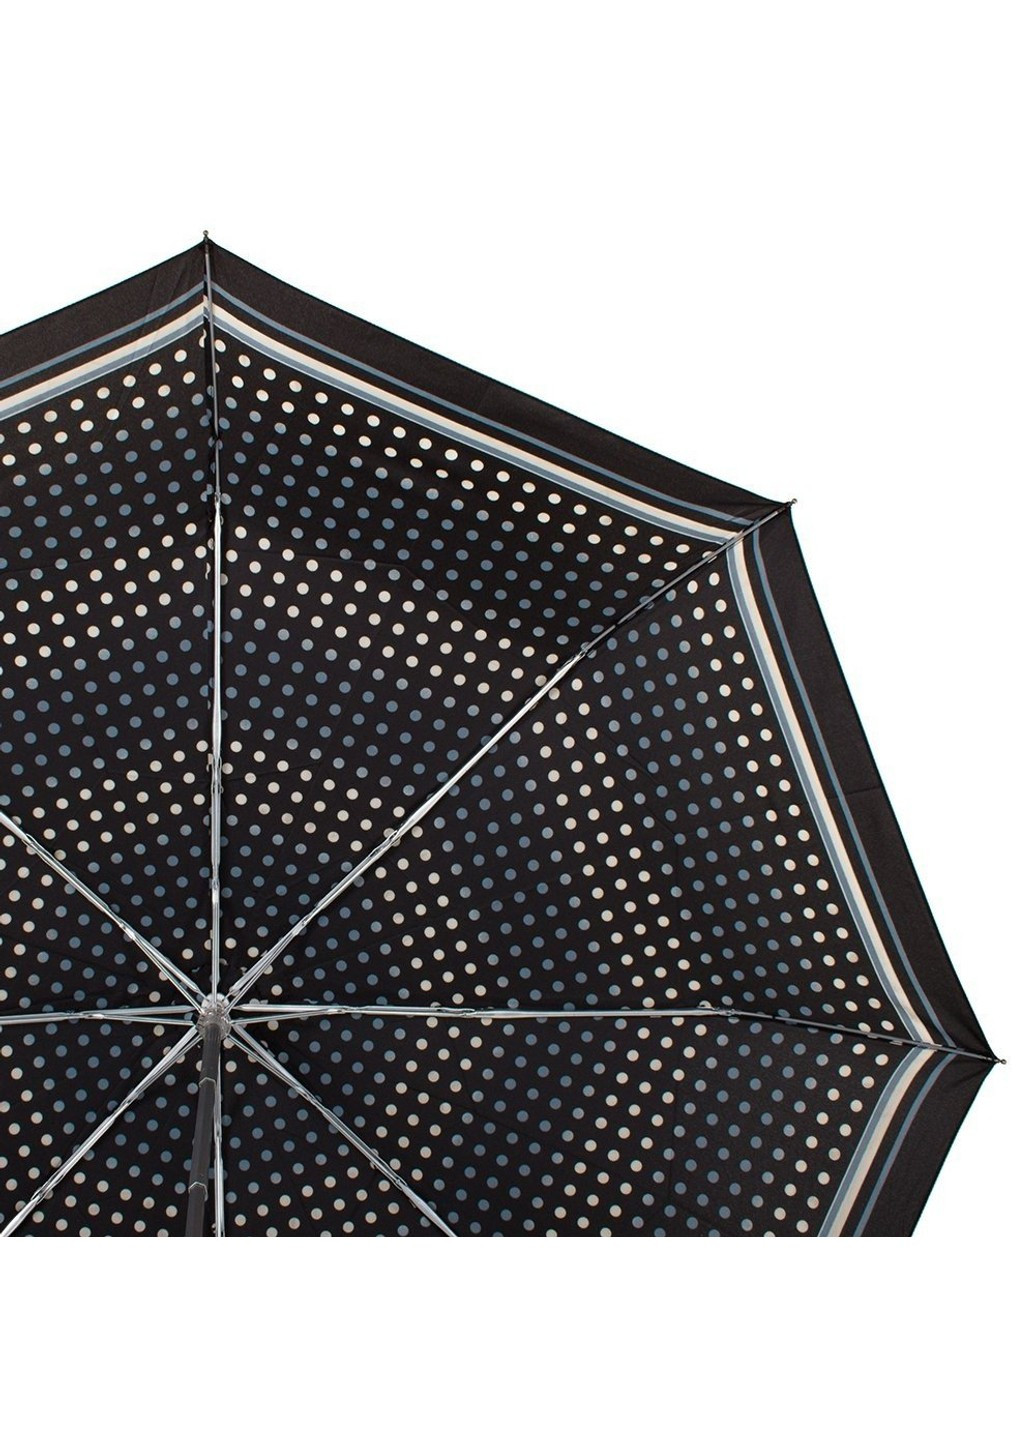 Механический женский зонтик компактный в горошек Happy Rain (262976692)